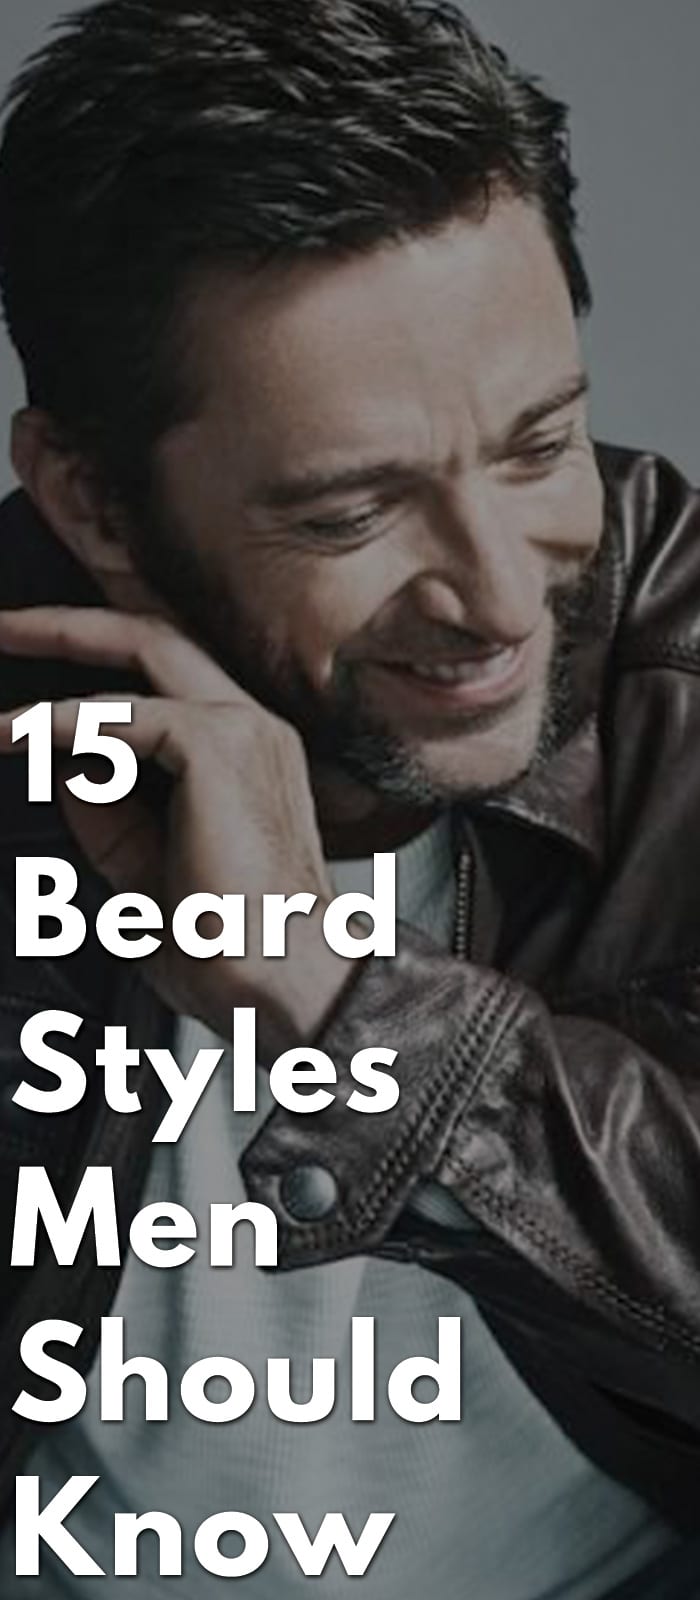 15-Beard-Styles-Men-Should-Know